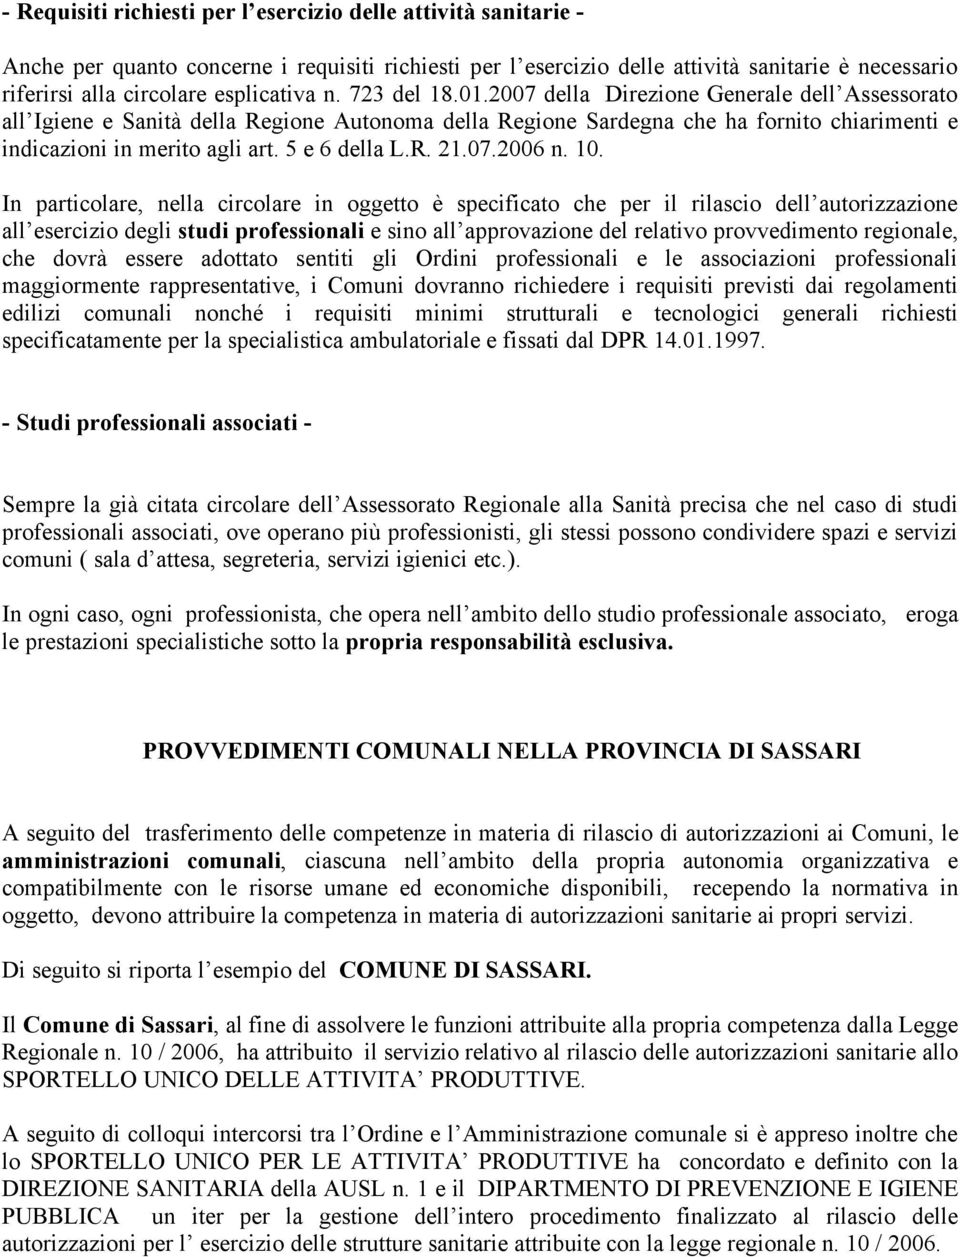 2007 della Direzione Generale dell Assessorato all Igiene e Sanità della Regione Autonoma della Regione Sardegna che ha fornito chiarimenti e indicazioni in merito agli art. 5 e 6 della L.R. 21.07.2006 n.